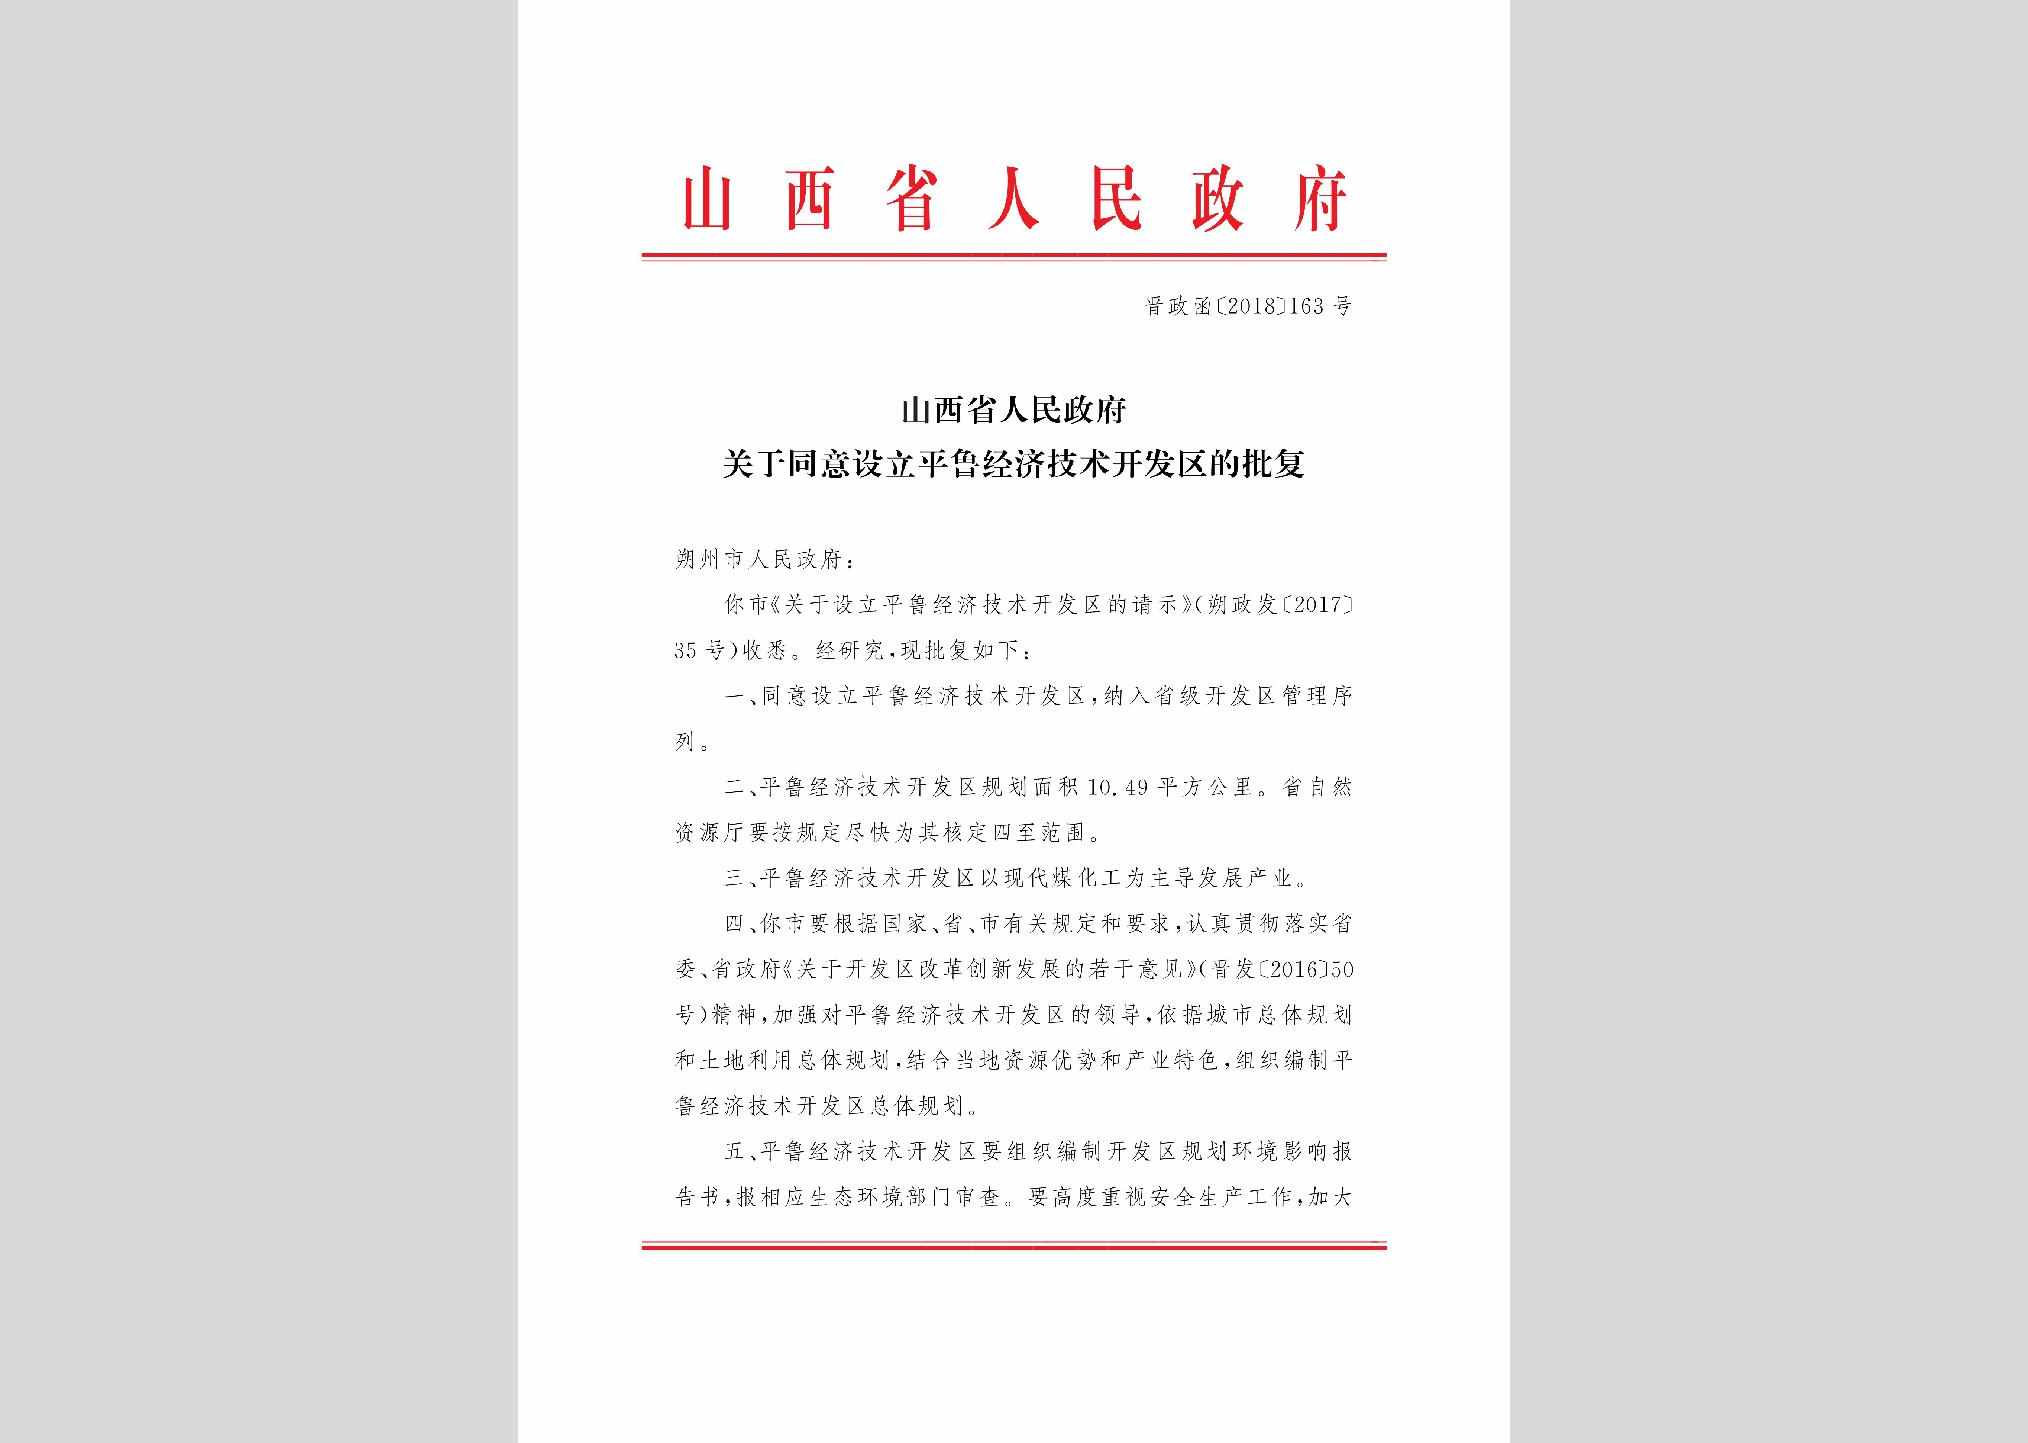 晋政函[2018]163号：山西省人民政府关于同意设立平鲁经济技术开发区的批复